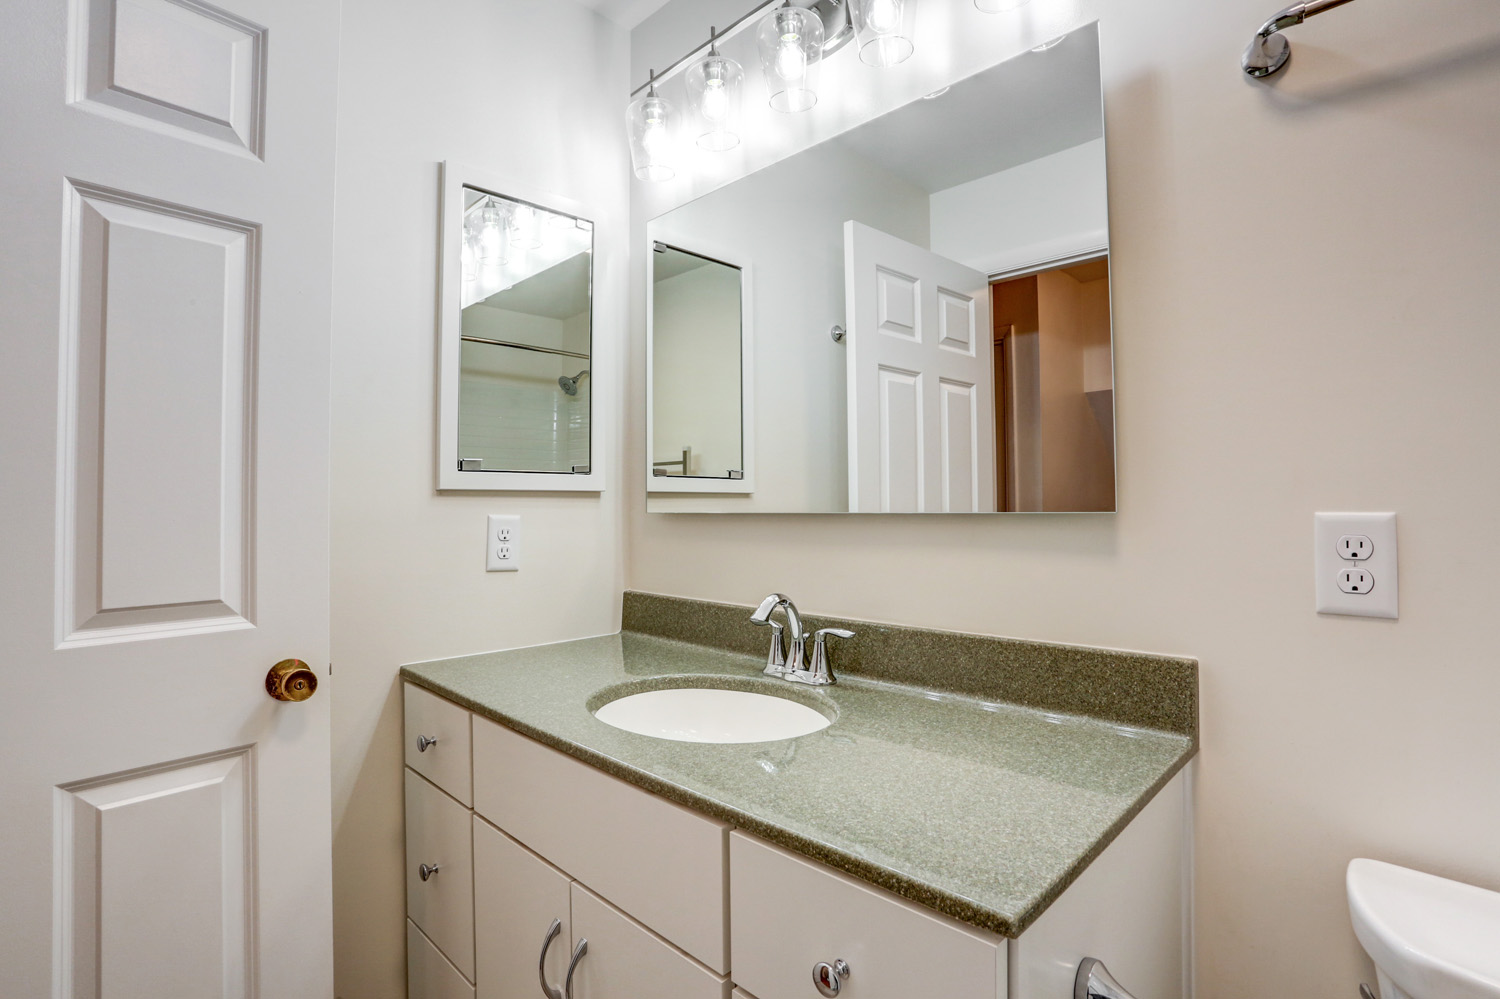 Bloomingdale guest bathroom remodel With cultured marble vanity top